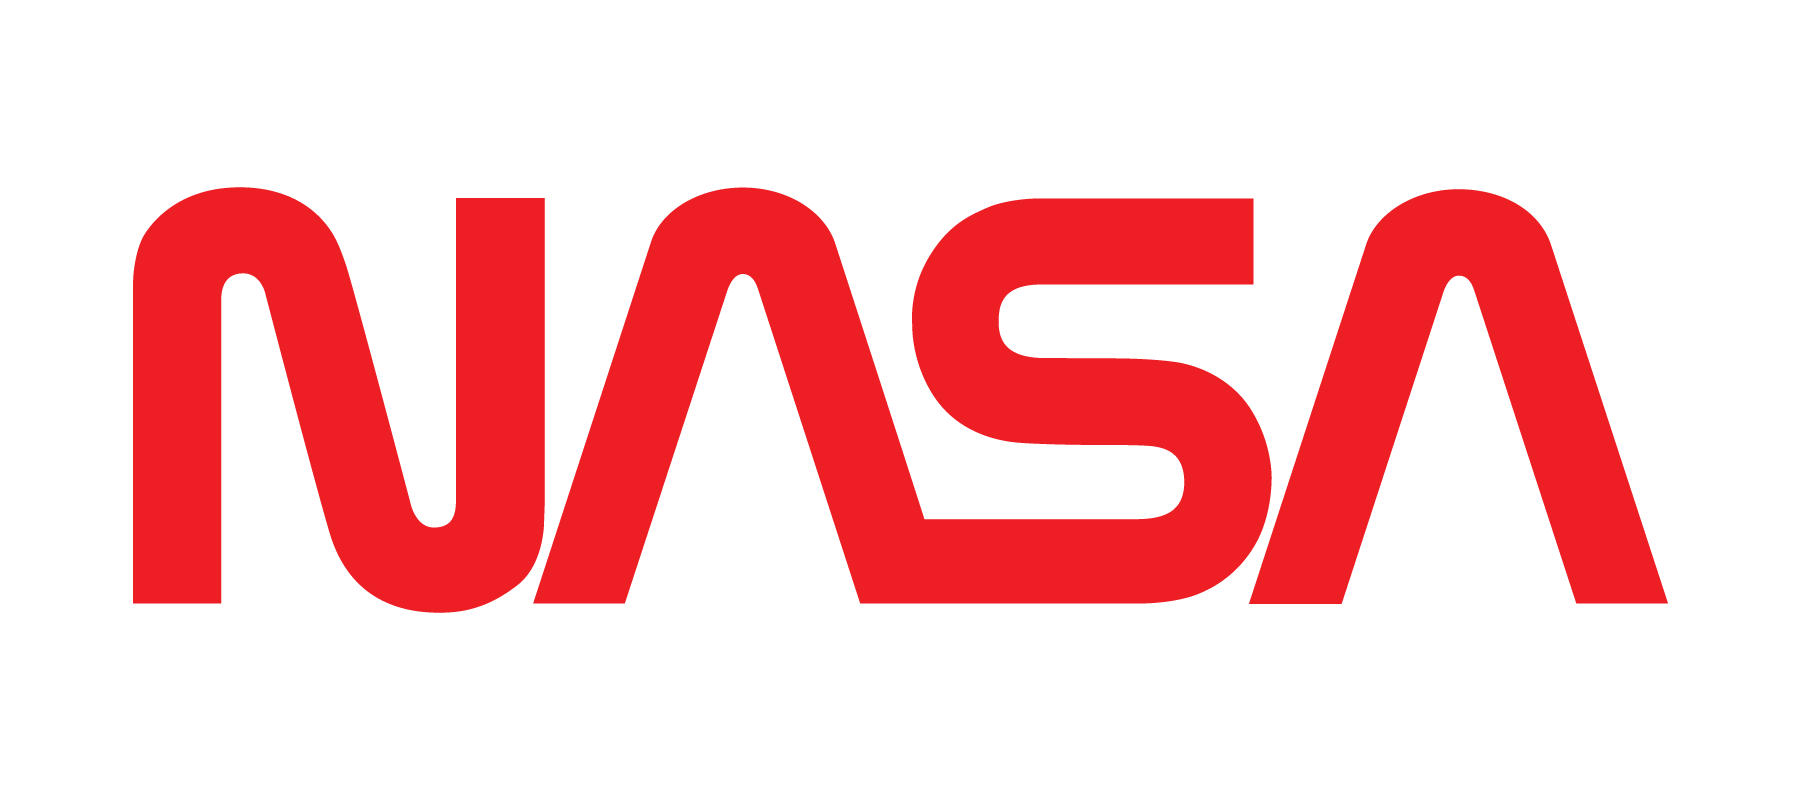 NASA logo in red 